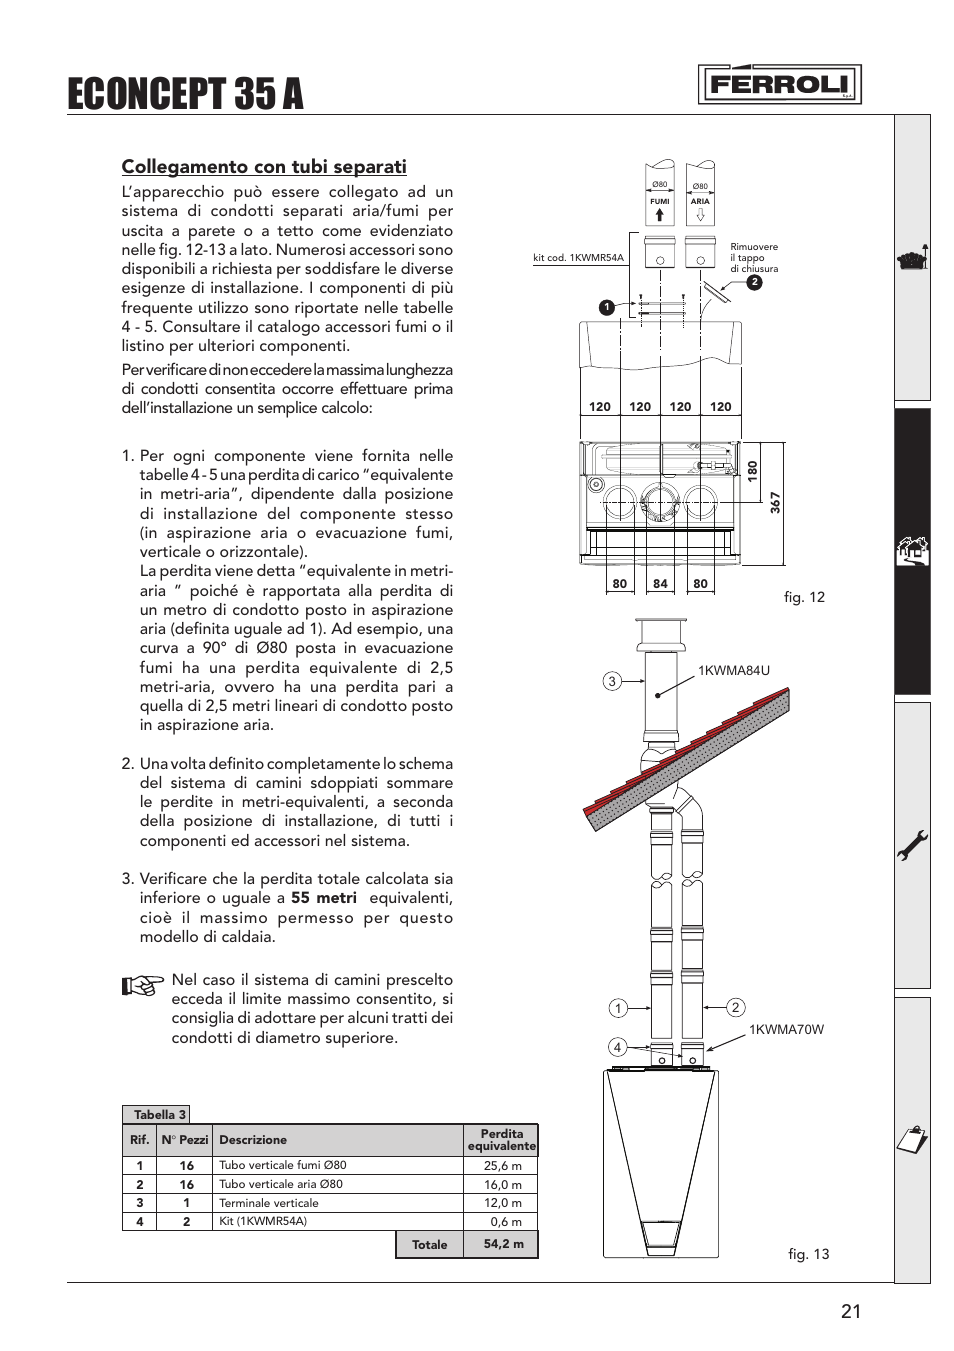 Econcept 35 a, Collegamento con tubi separati | FERROLI Econcept 35A Manuale d'uso | Pagina 21 / 36